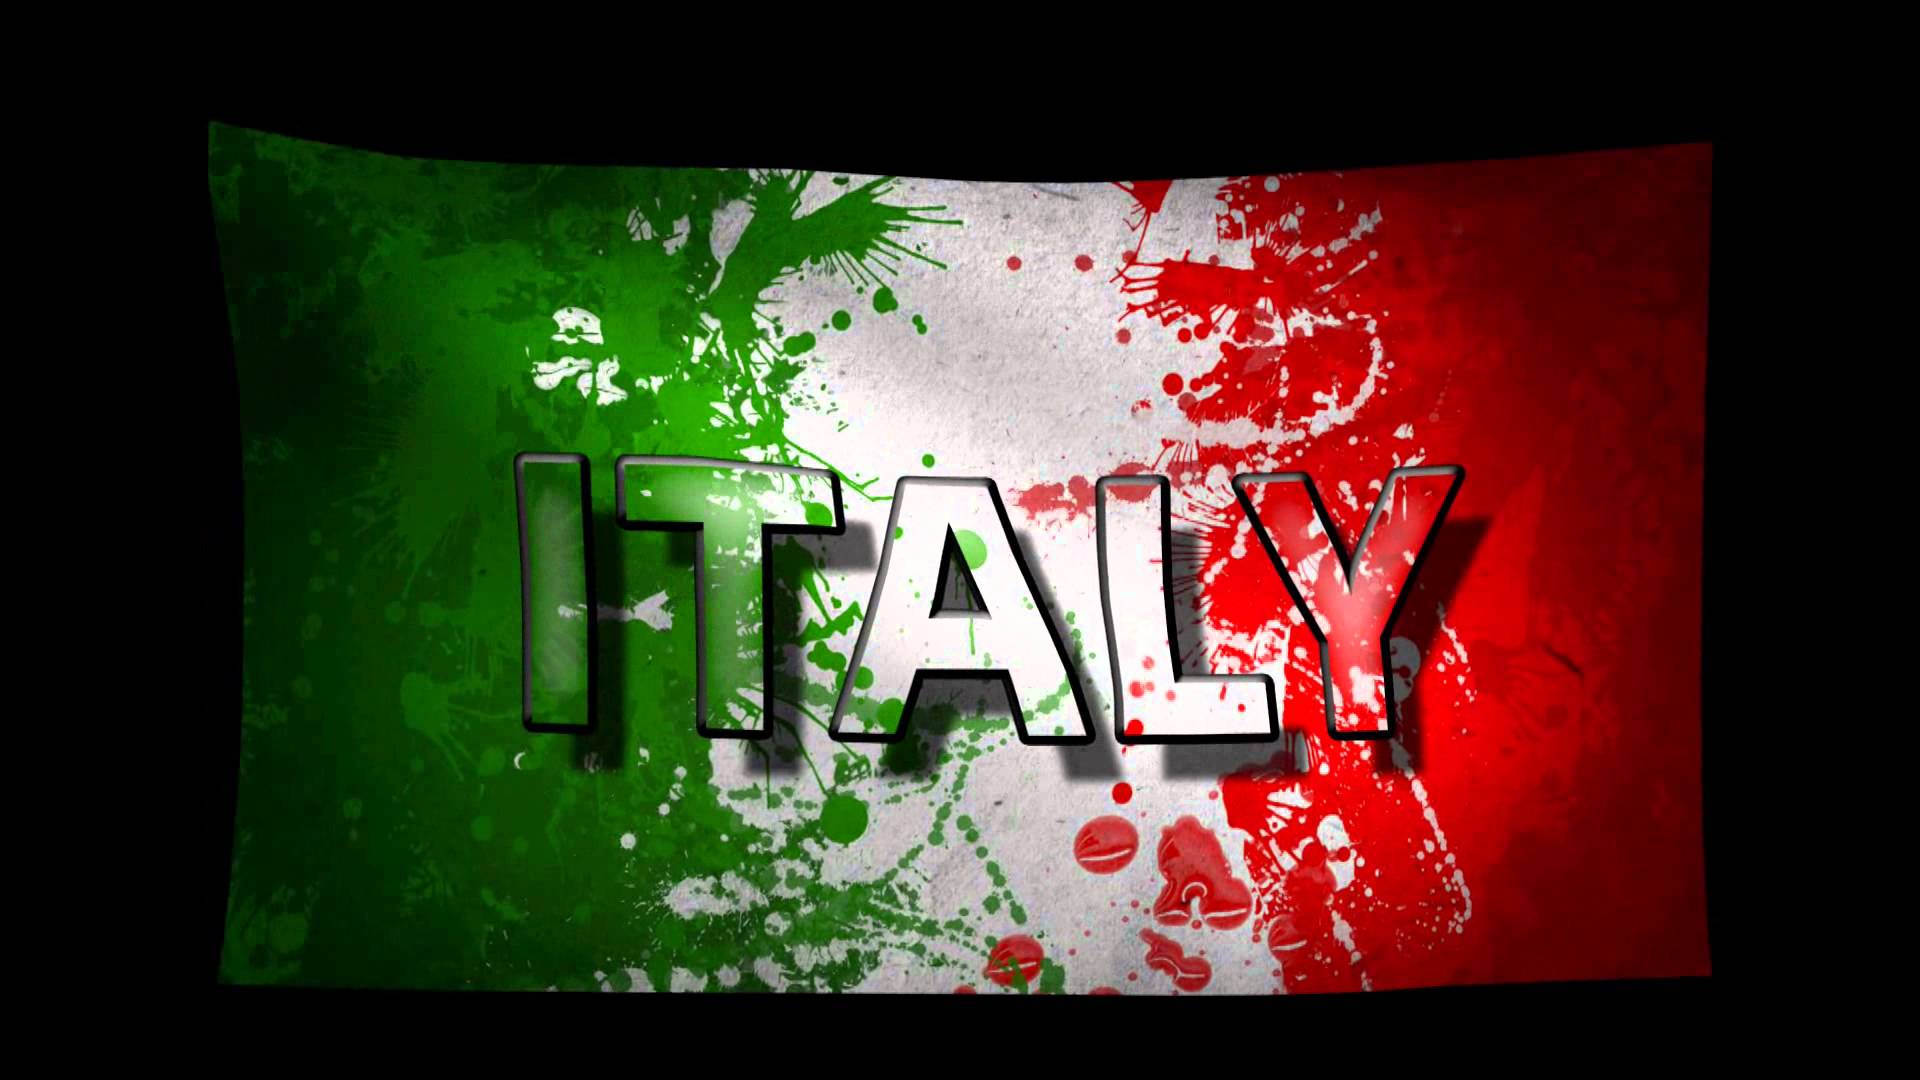 italian pride wallpapers